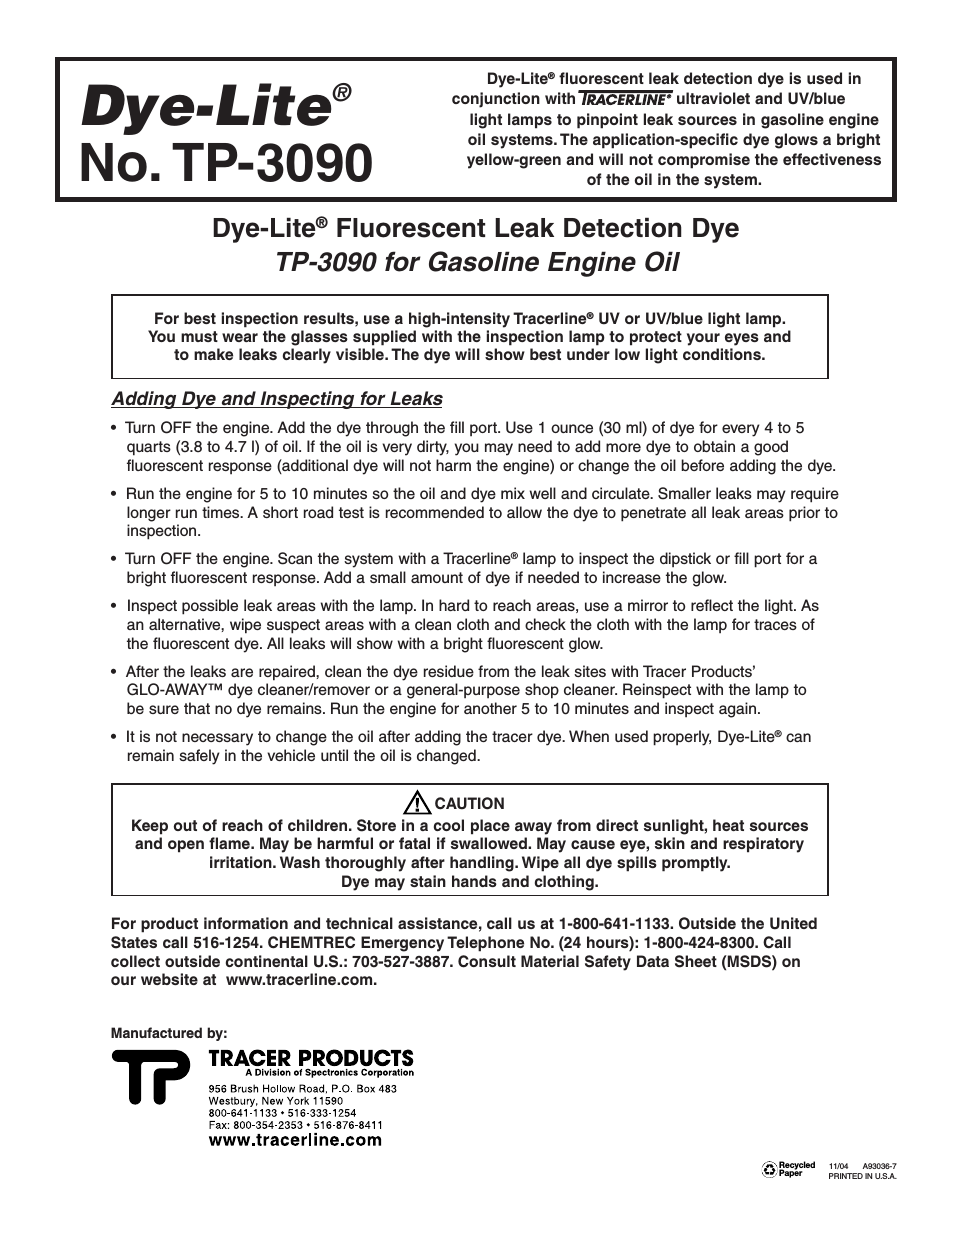 TP-3090 Dye-Lite